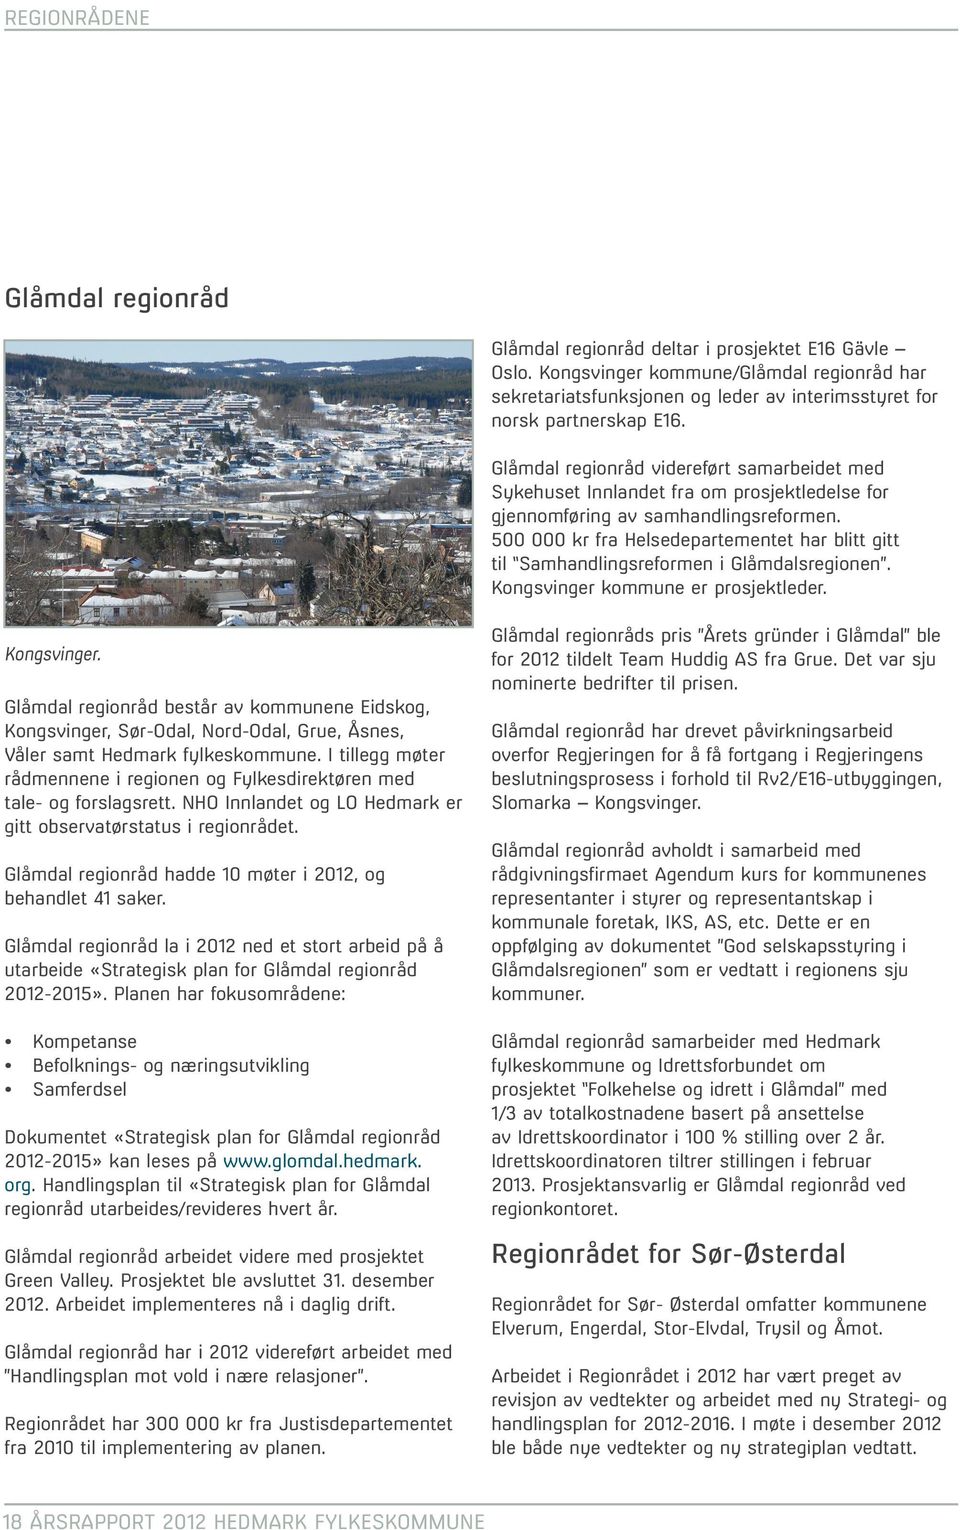 Glåmdal regionråd videreført samarbeidet med Sykehuset Innlandet fra om prosjektledelse for gjennomføring av samhandlingsreformen.